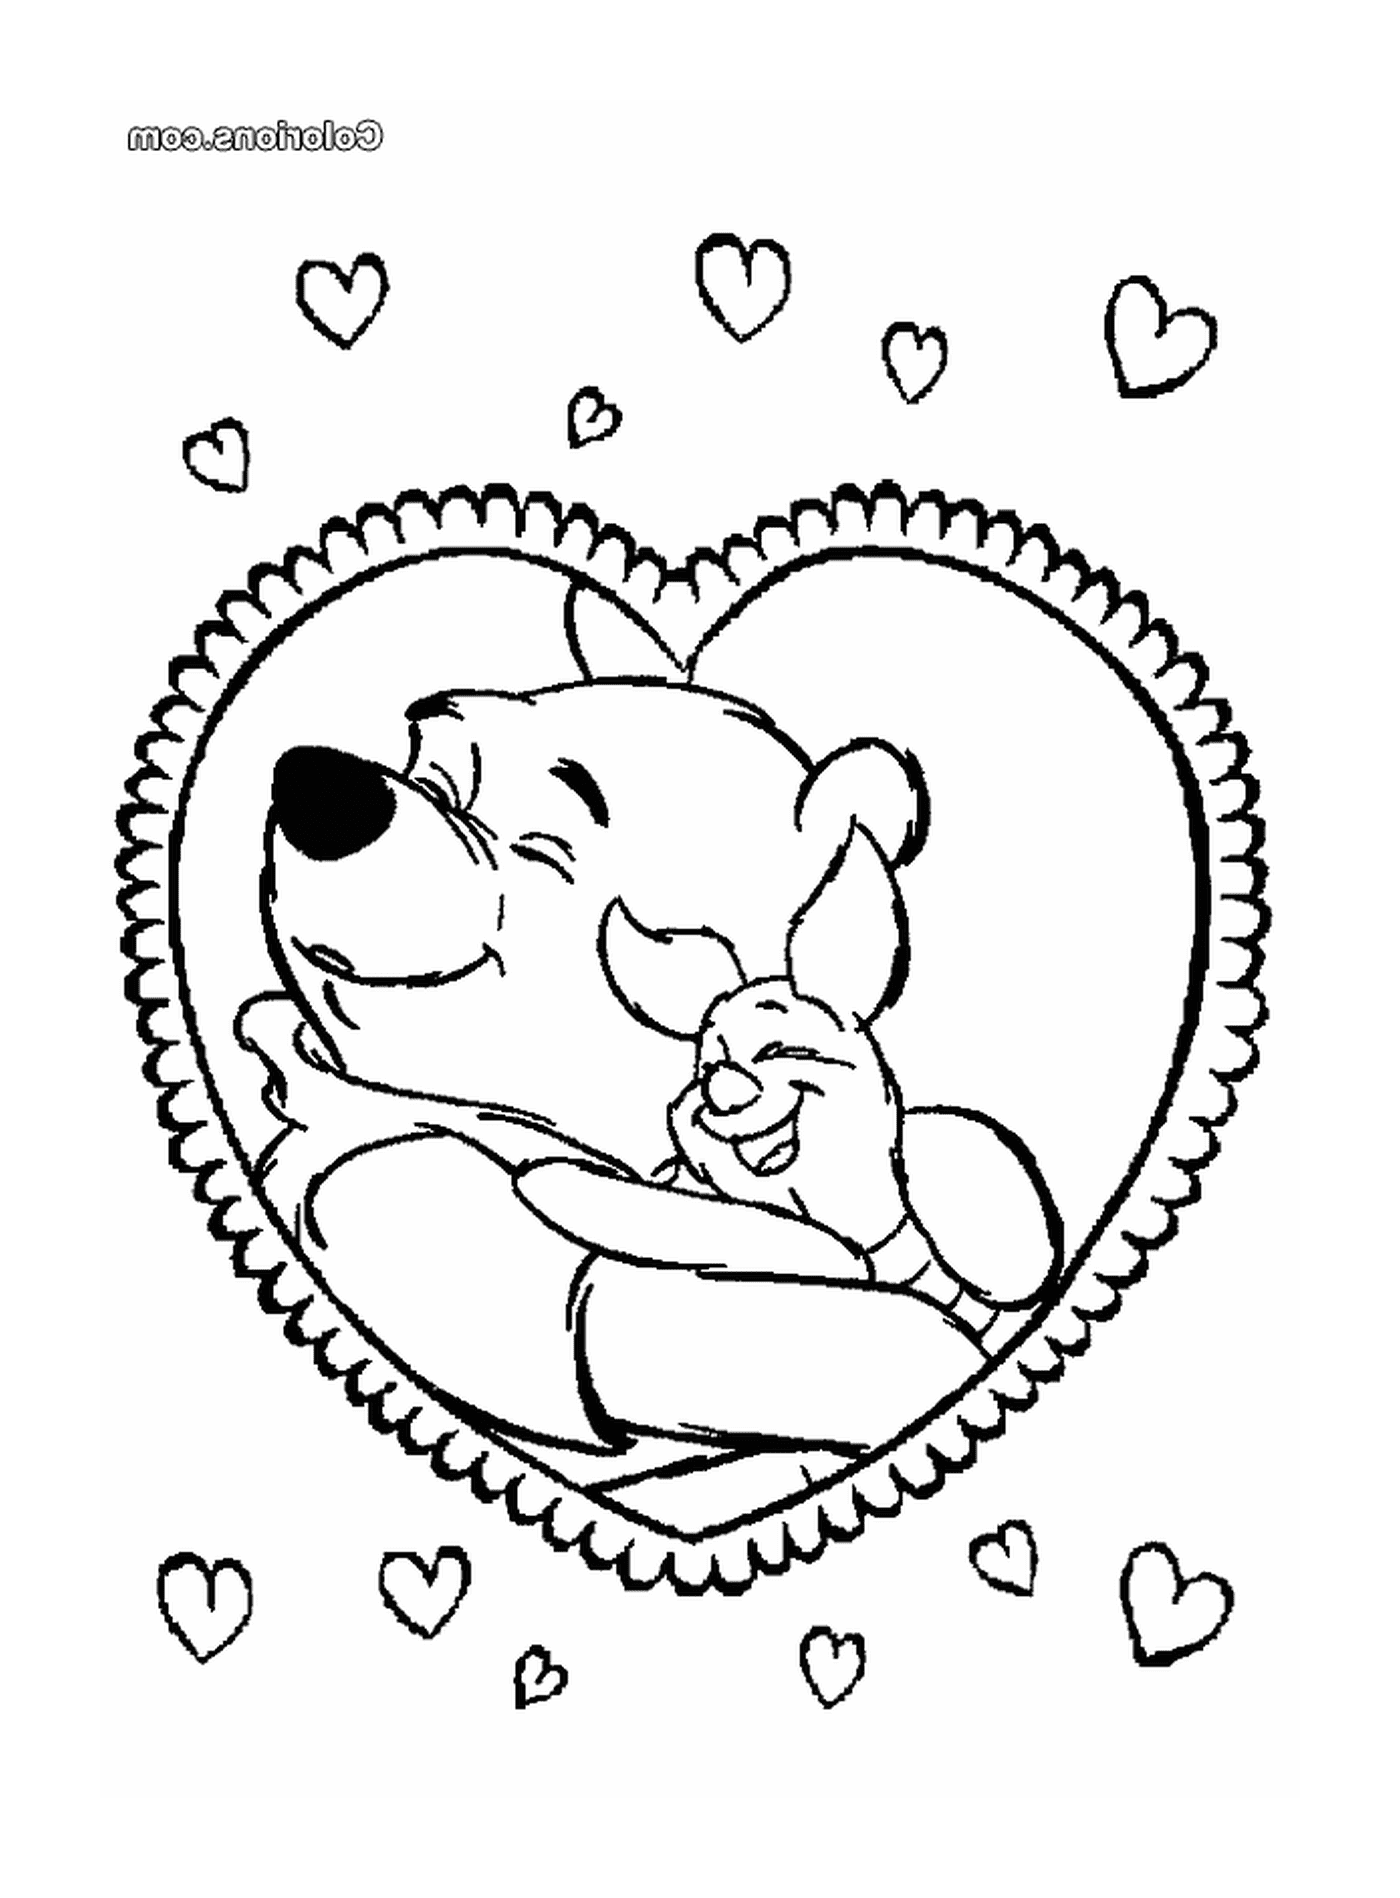   Saint-Valentin, ours dans un cœur 